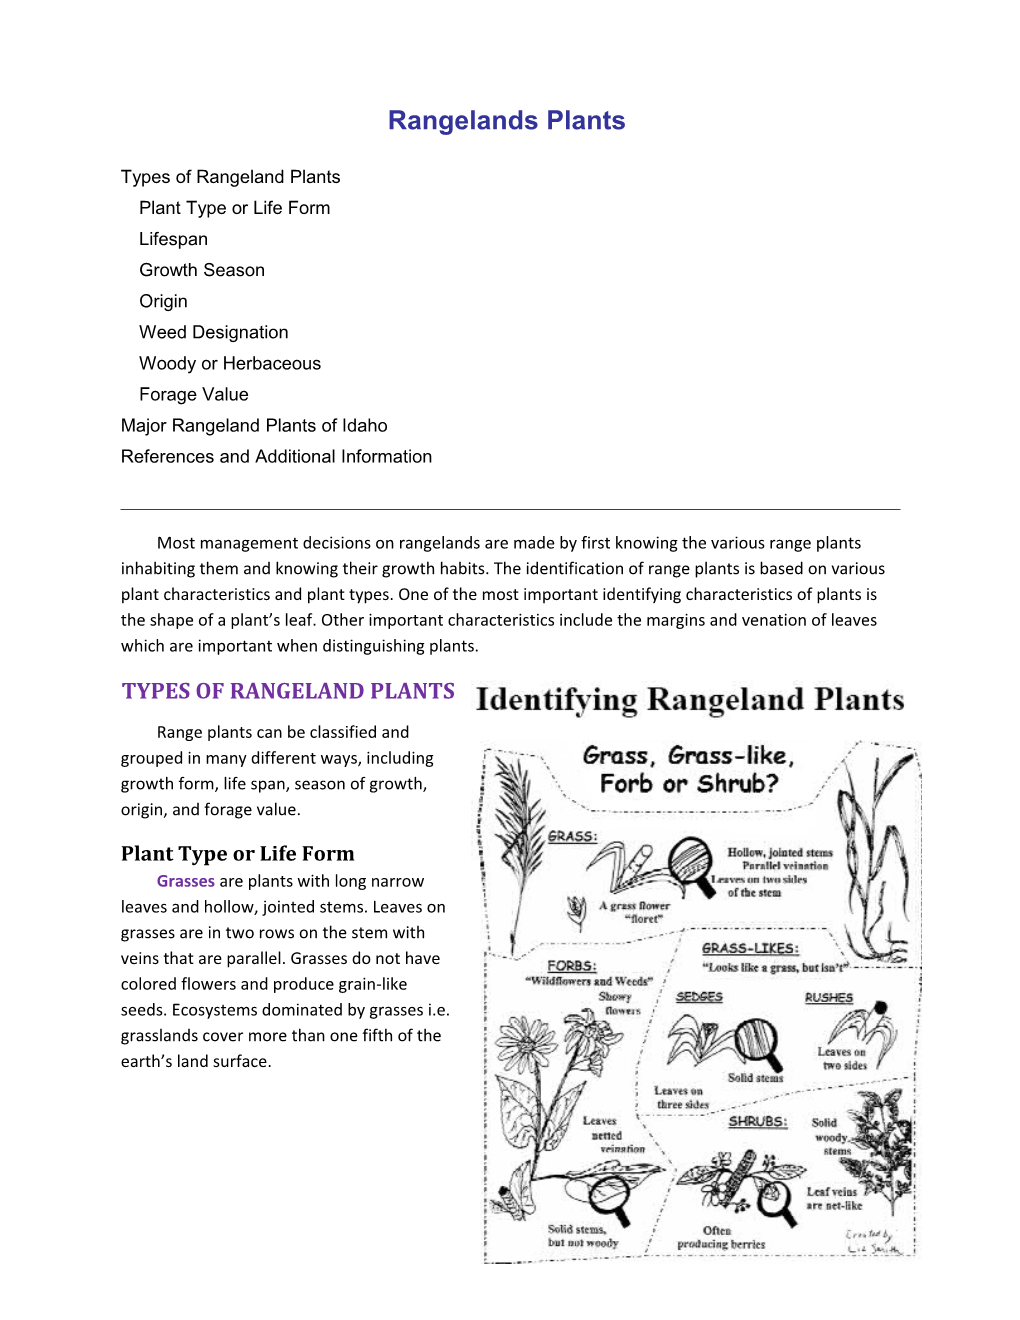 Background Information - Rangeland Plants